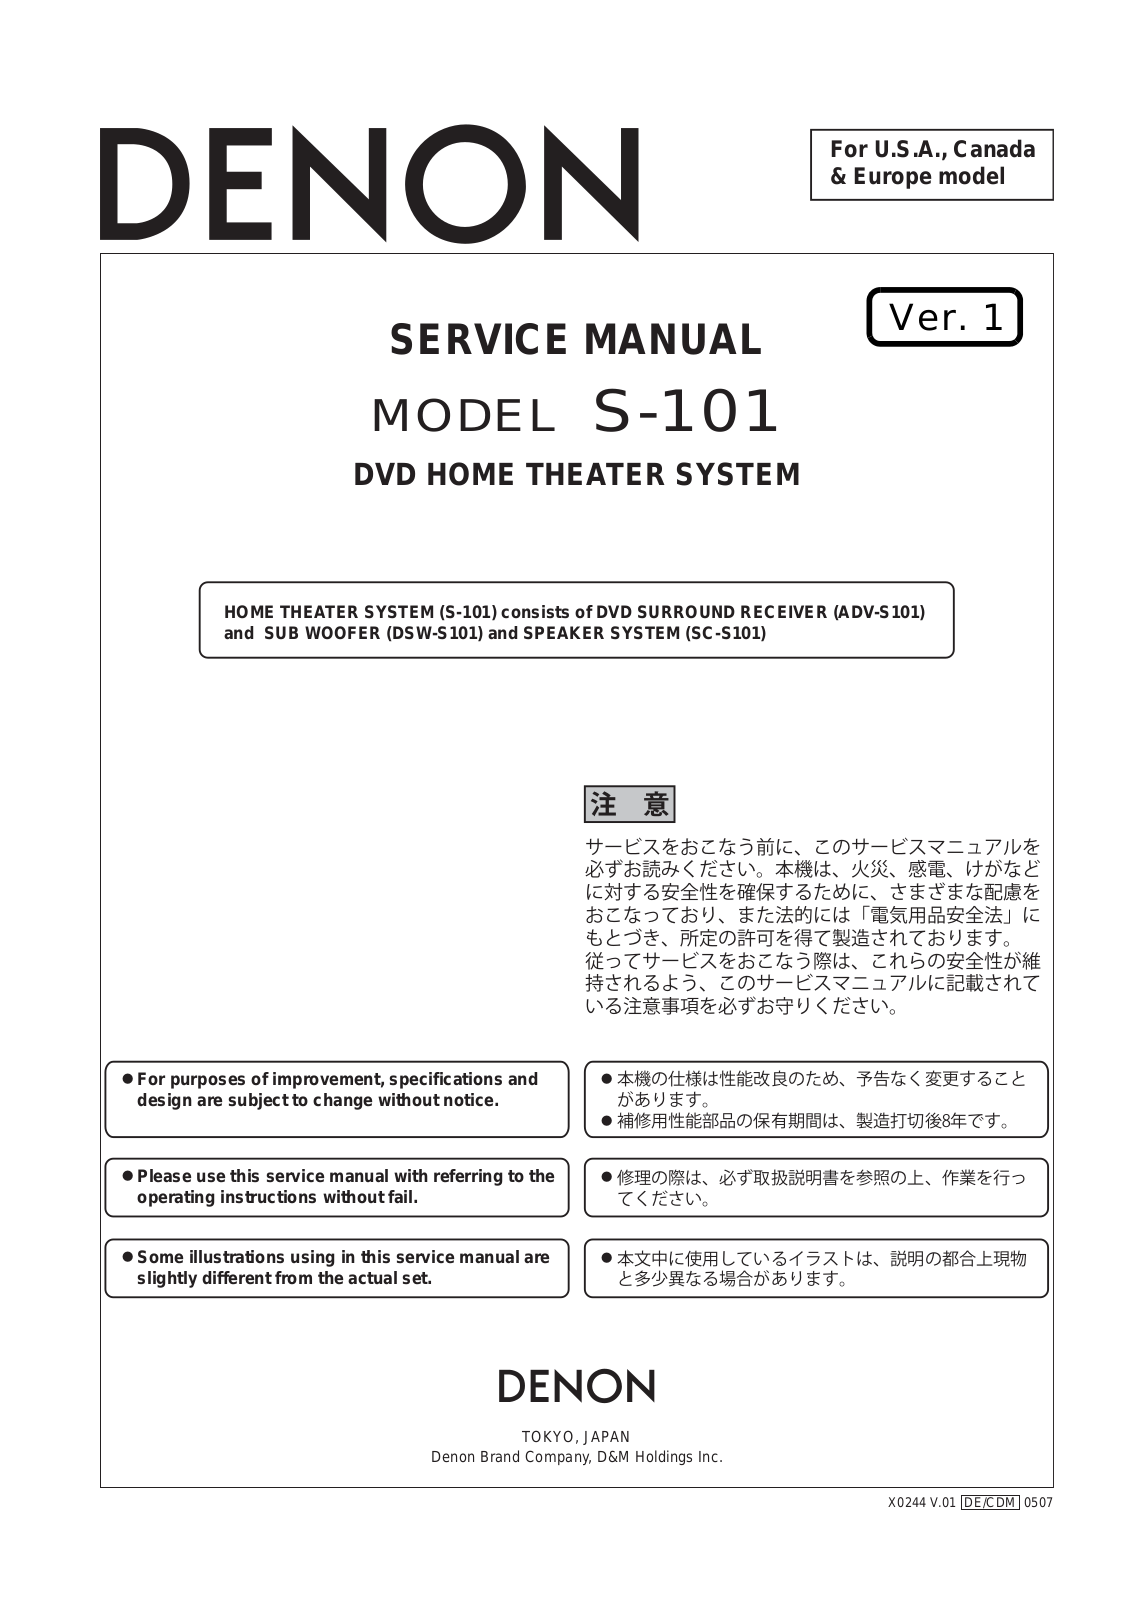 Denon S-101 Service Manual